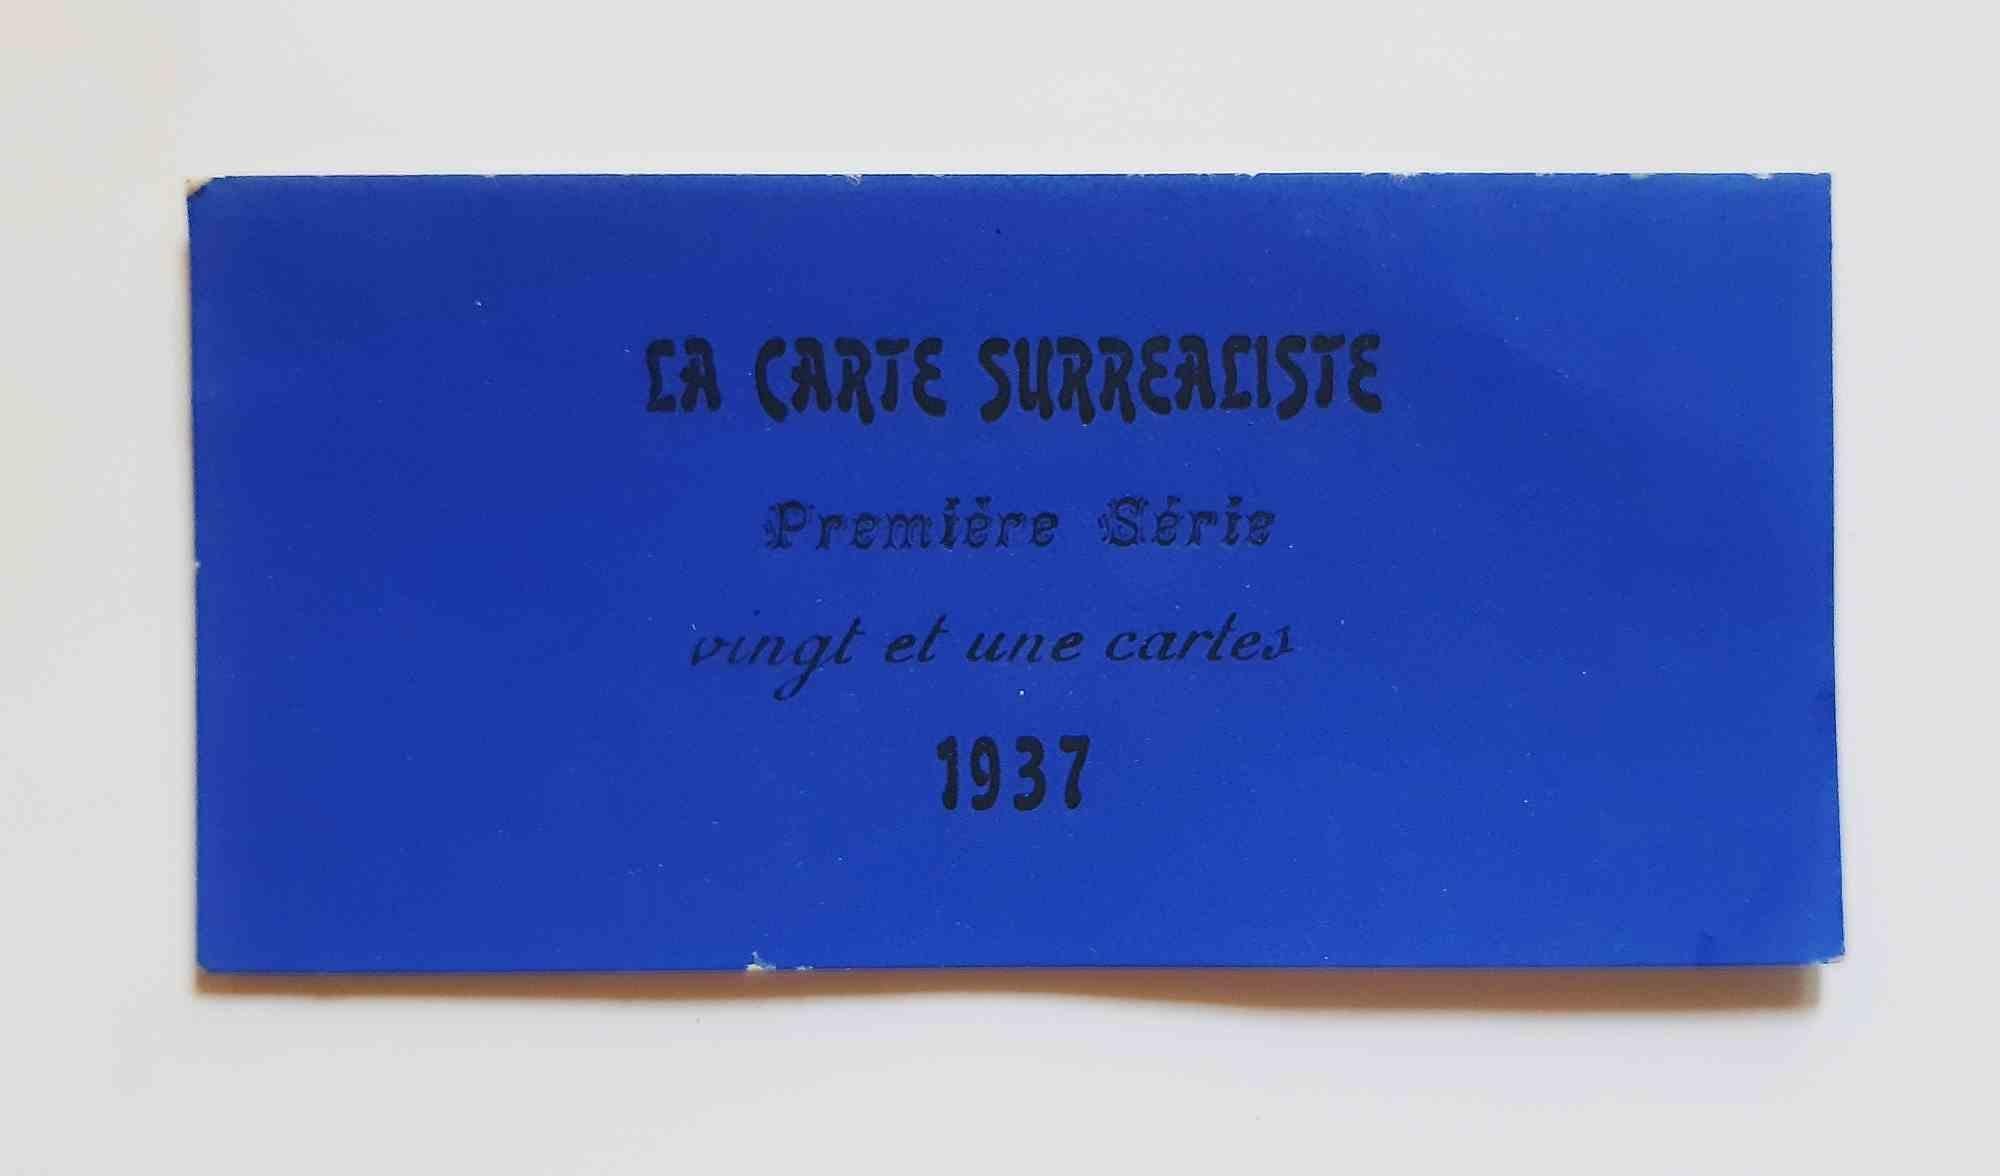 La Carte Surréaliste. Première série. Vingt et une cartes - 1937 - Print de Visionaire (Various Artists)